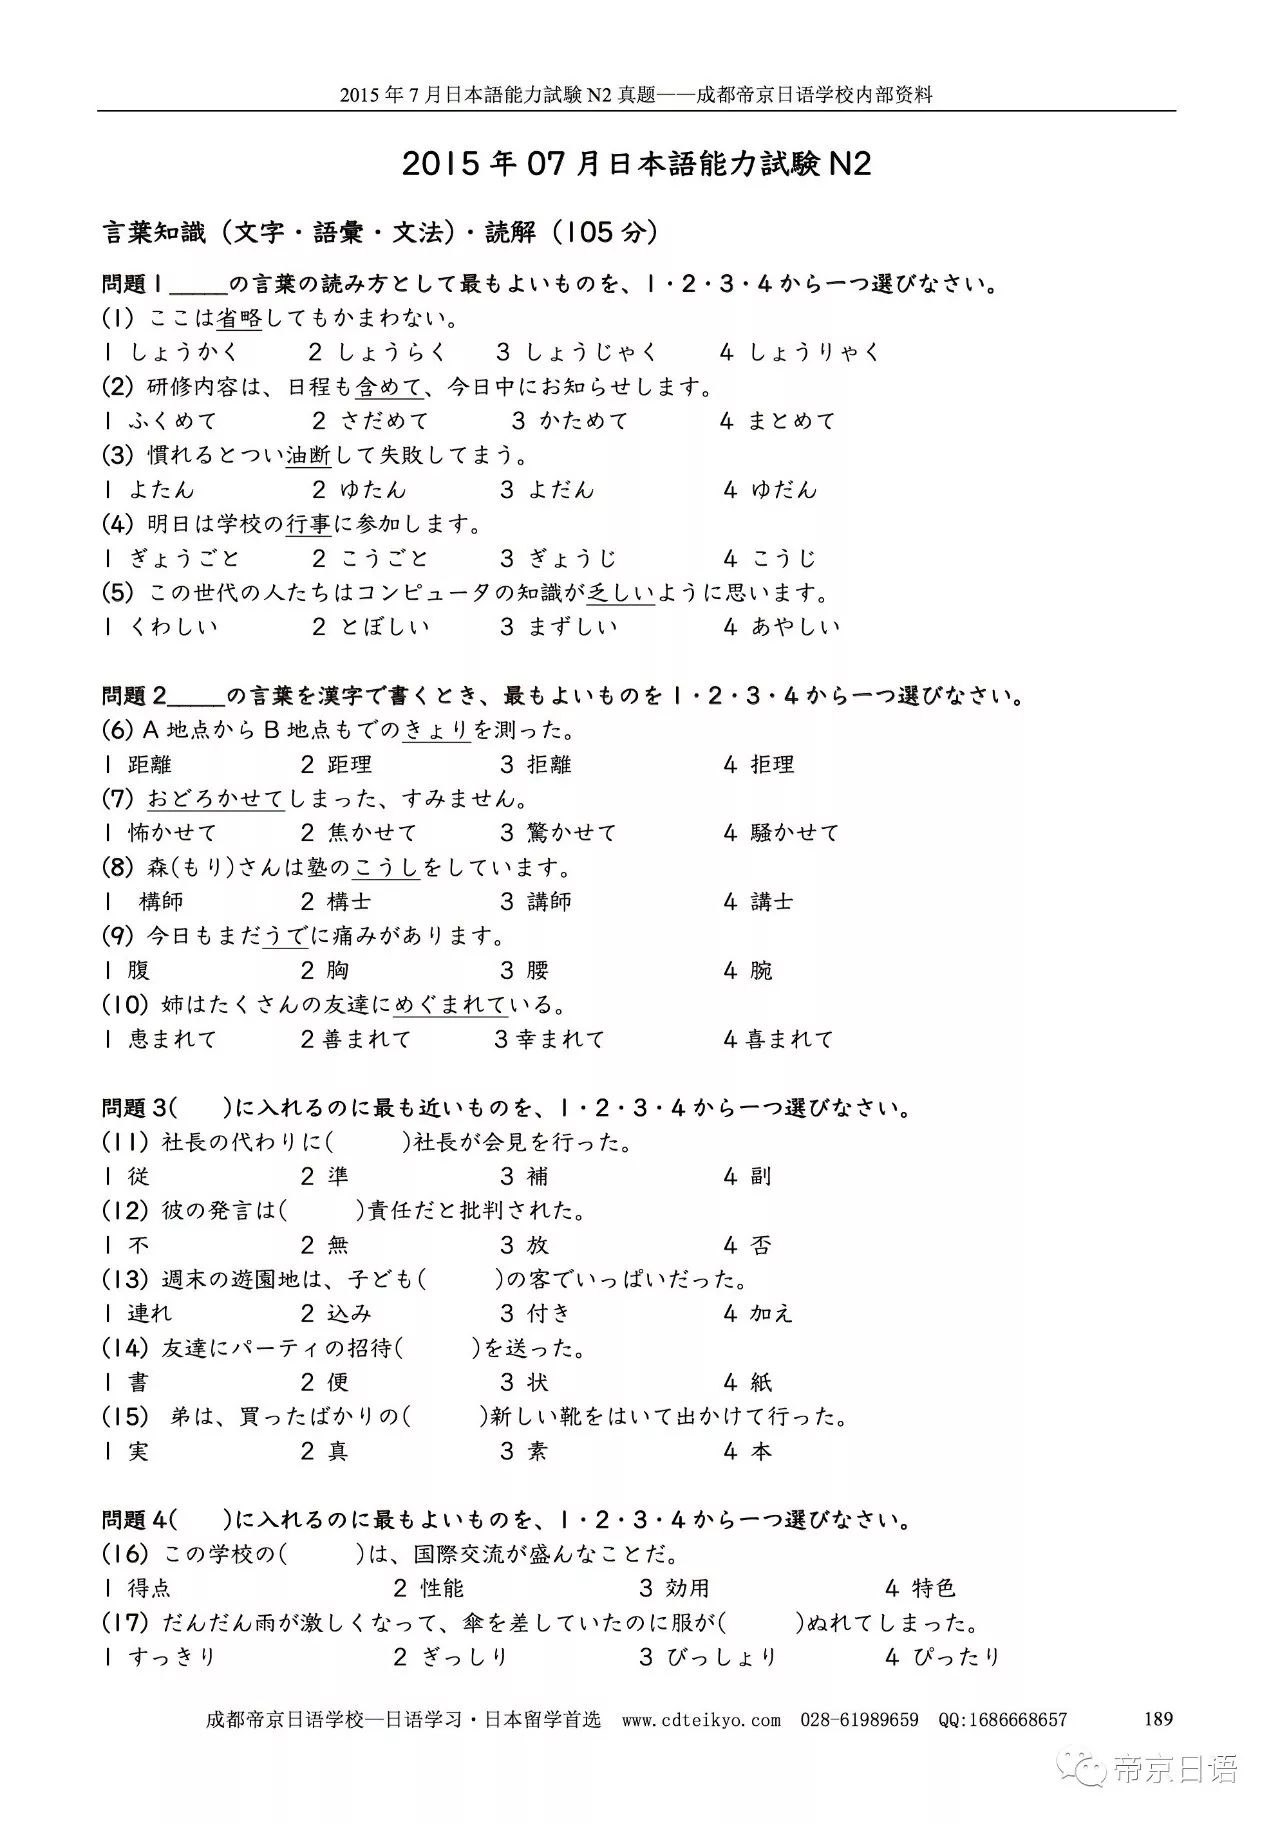 免费下载 日语能力考试n2 N1历年真题完美打印版 自由微信 Freewechat